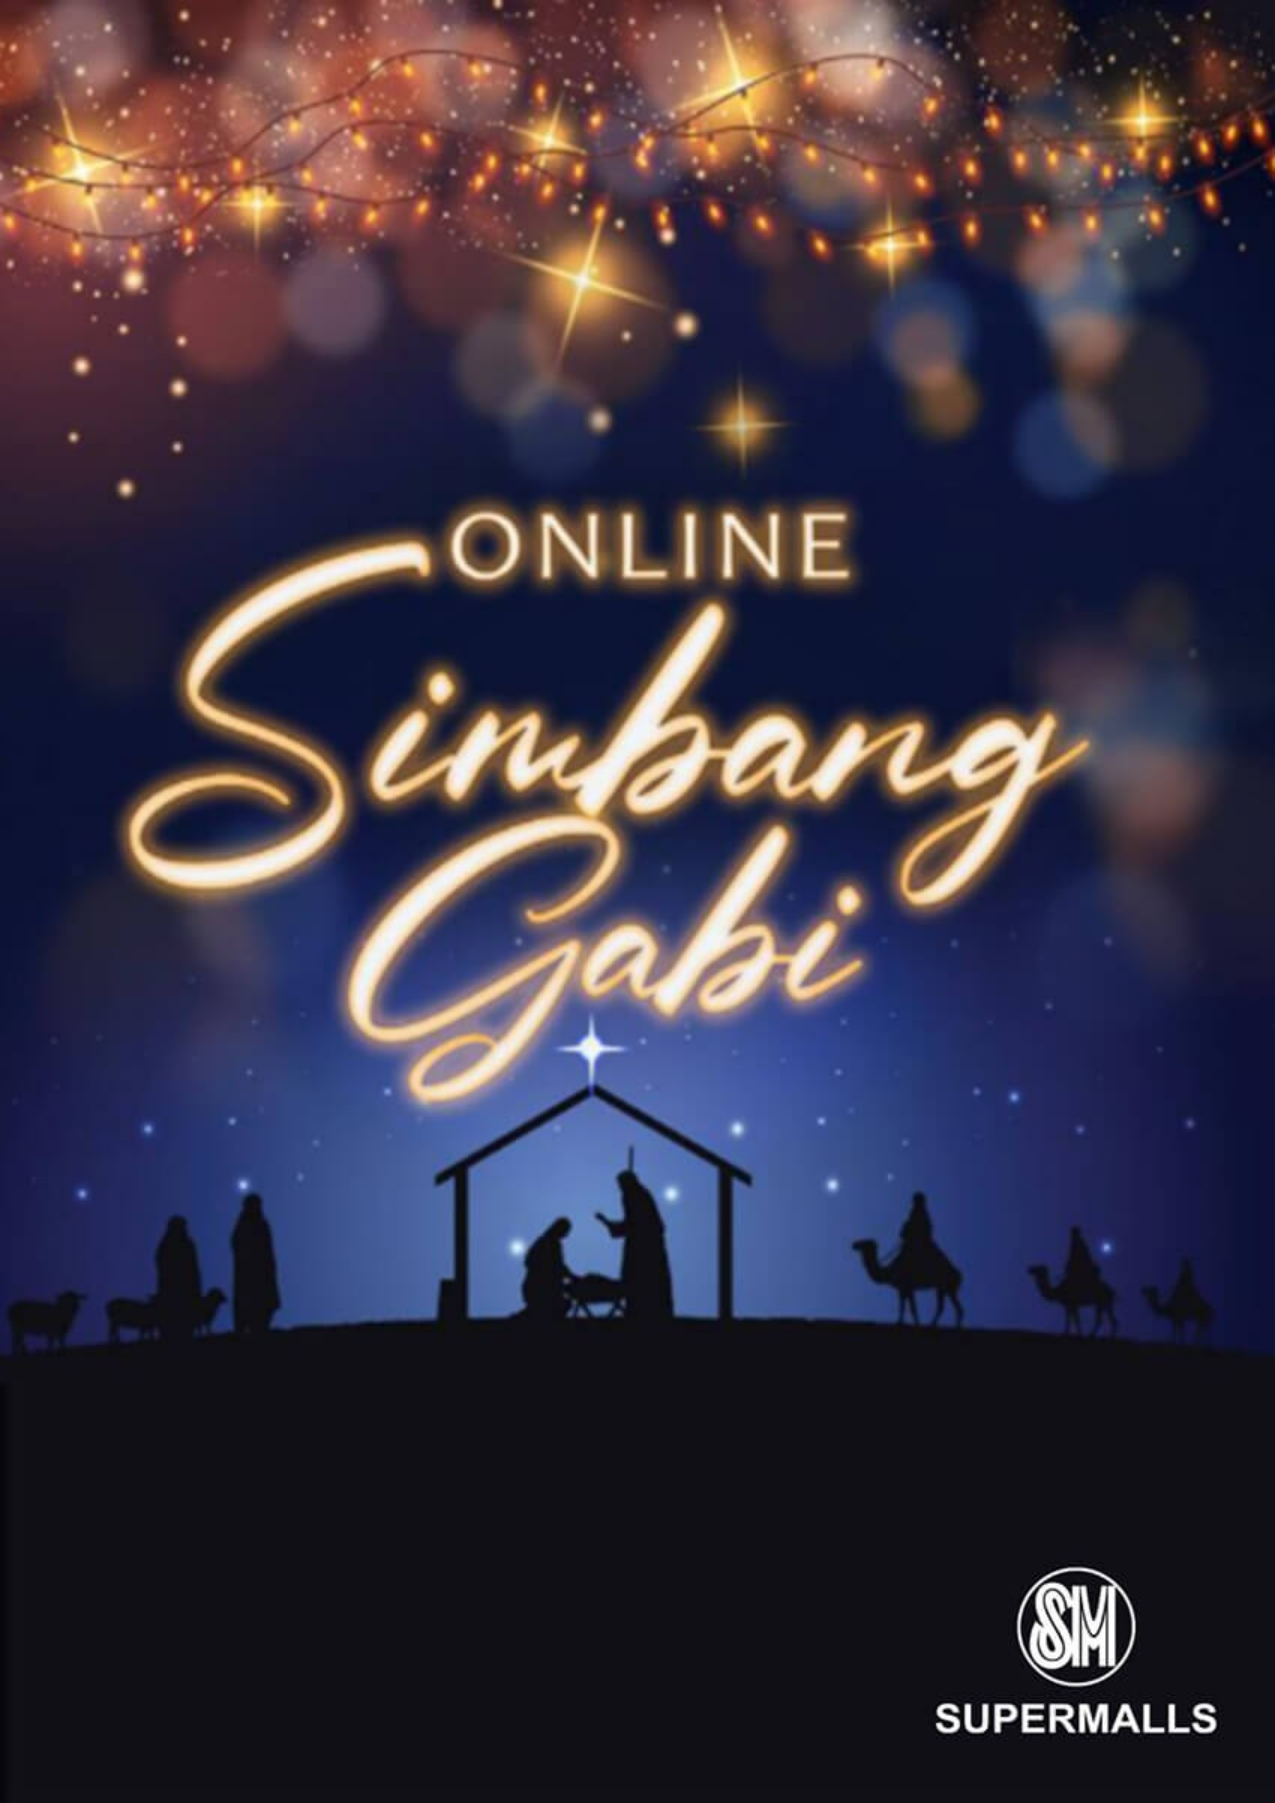 Online Simbang Gabi